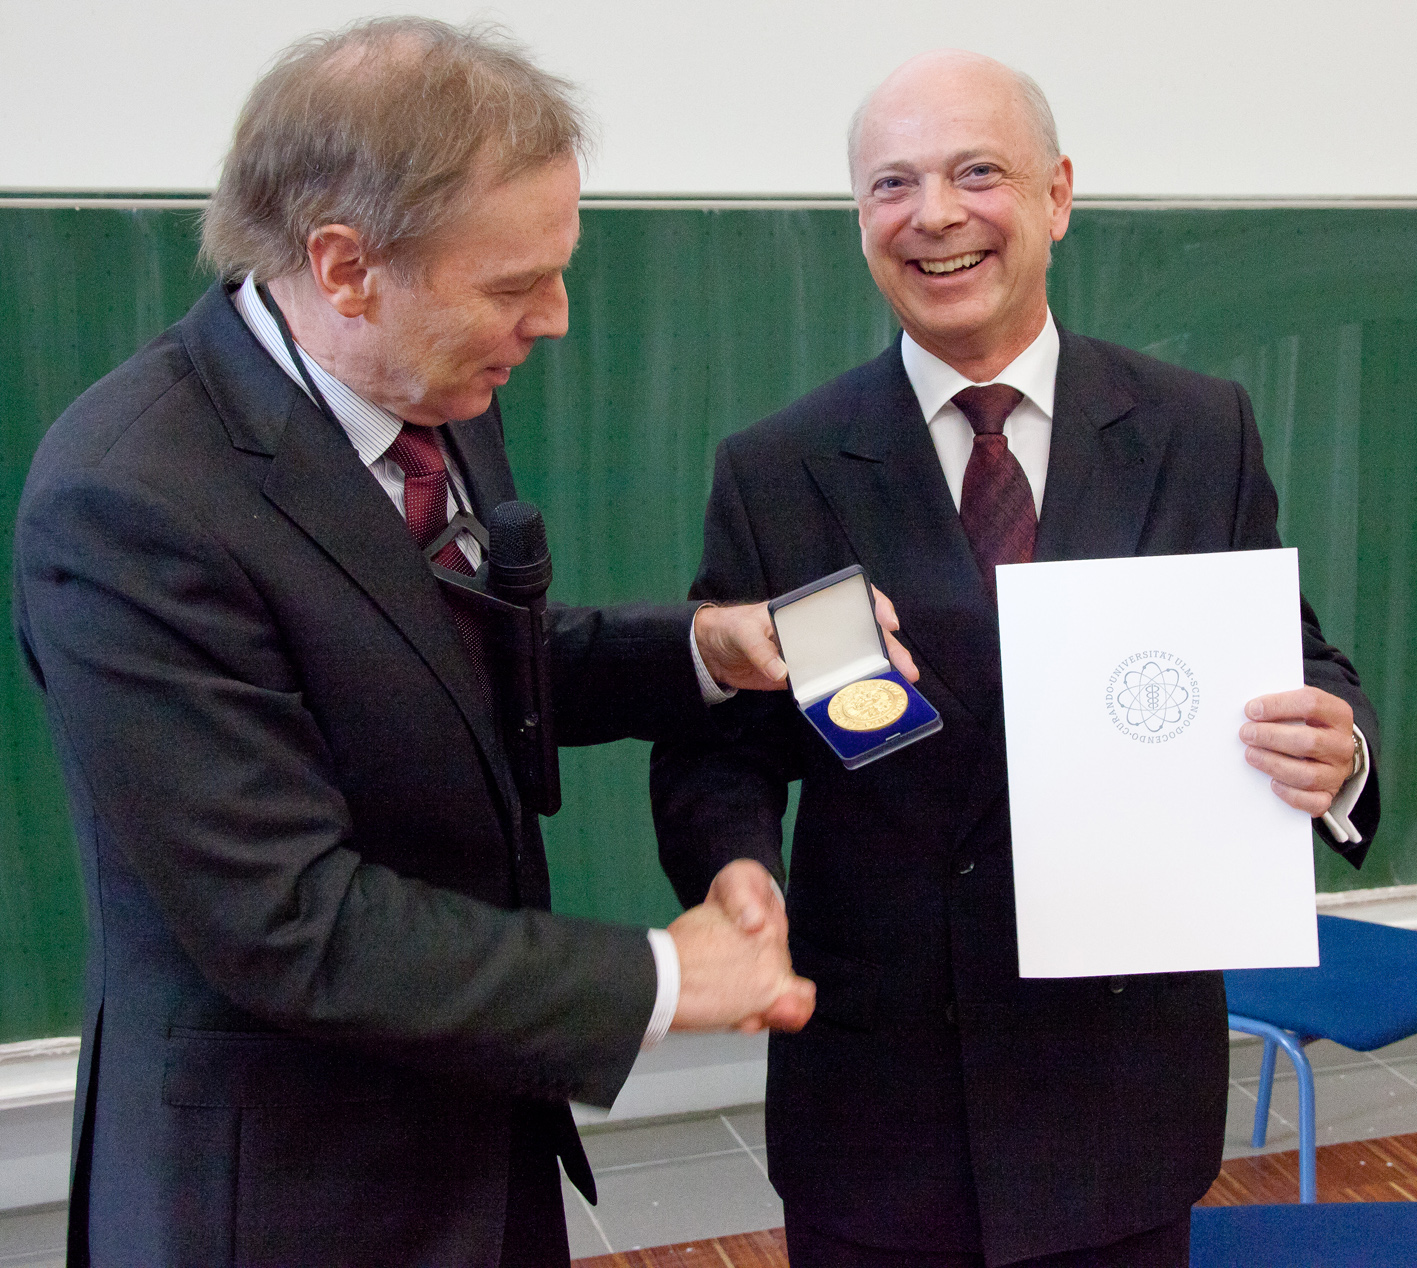 Universitätspräsident Prof. Karl Joachim Ebeling (links) überreicht Prof. Dietmar Zietsch die Medaille der Uni Ulm